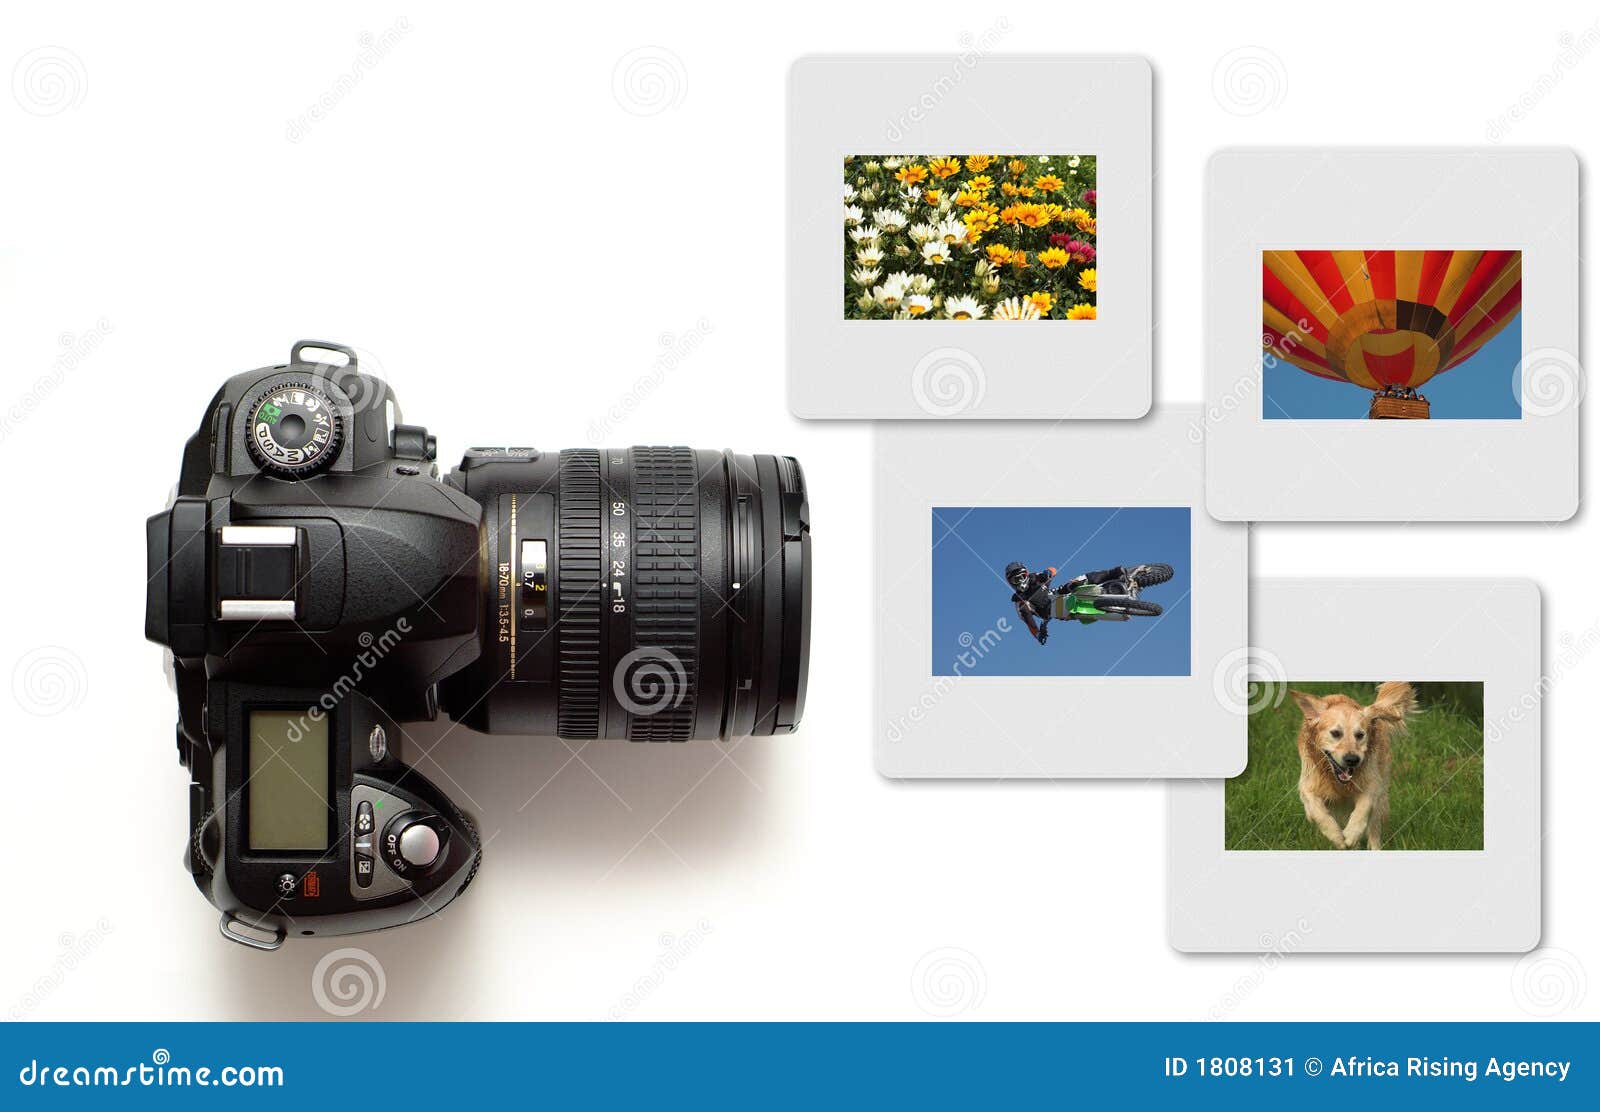 το χρώμα φωτογραφικών μηχα&n. η φωτογραφική μηχανή που χρωματίστηκε απομόνωσε το σύγχρονο διαταγμένο λευκό φωτογραφικών διαφανειών φωτογραφιών σχεδιαγράμματος slr